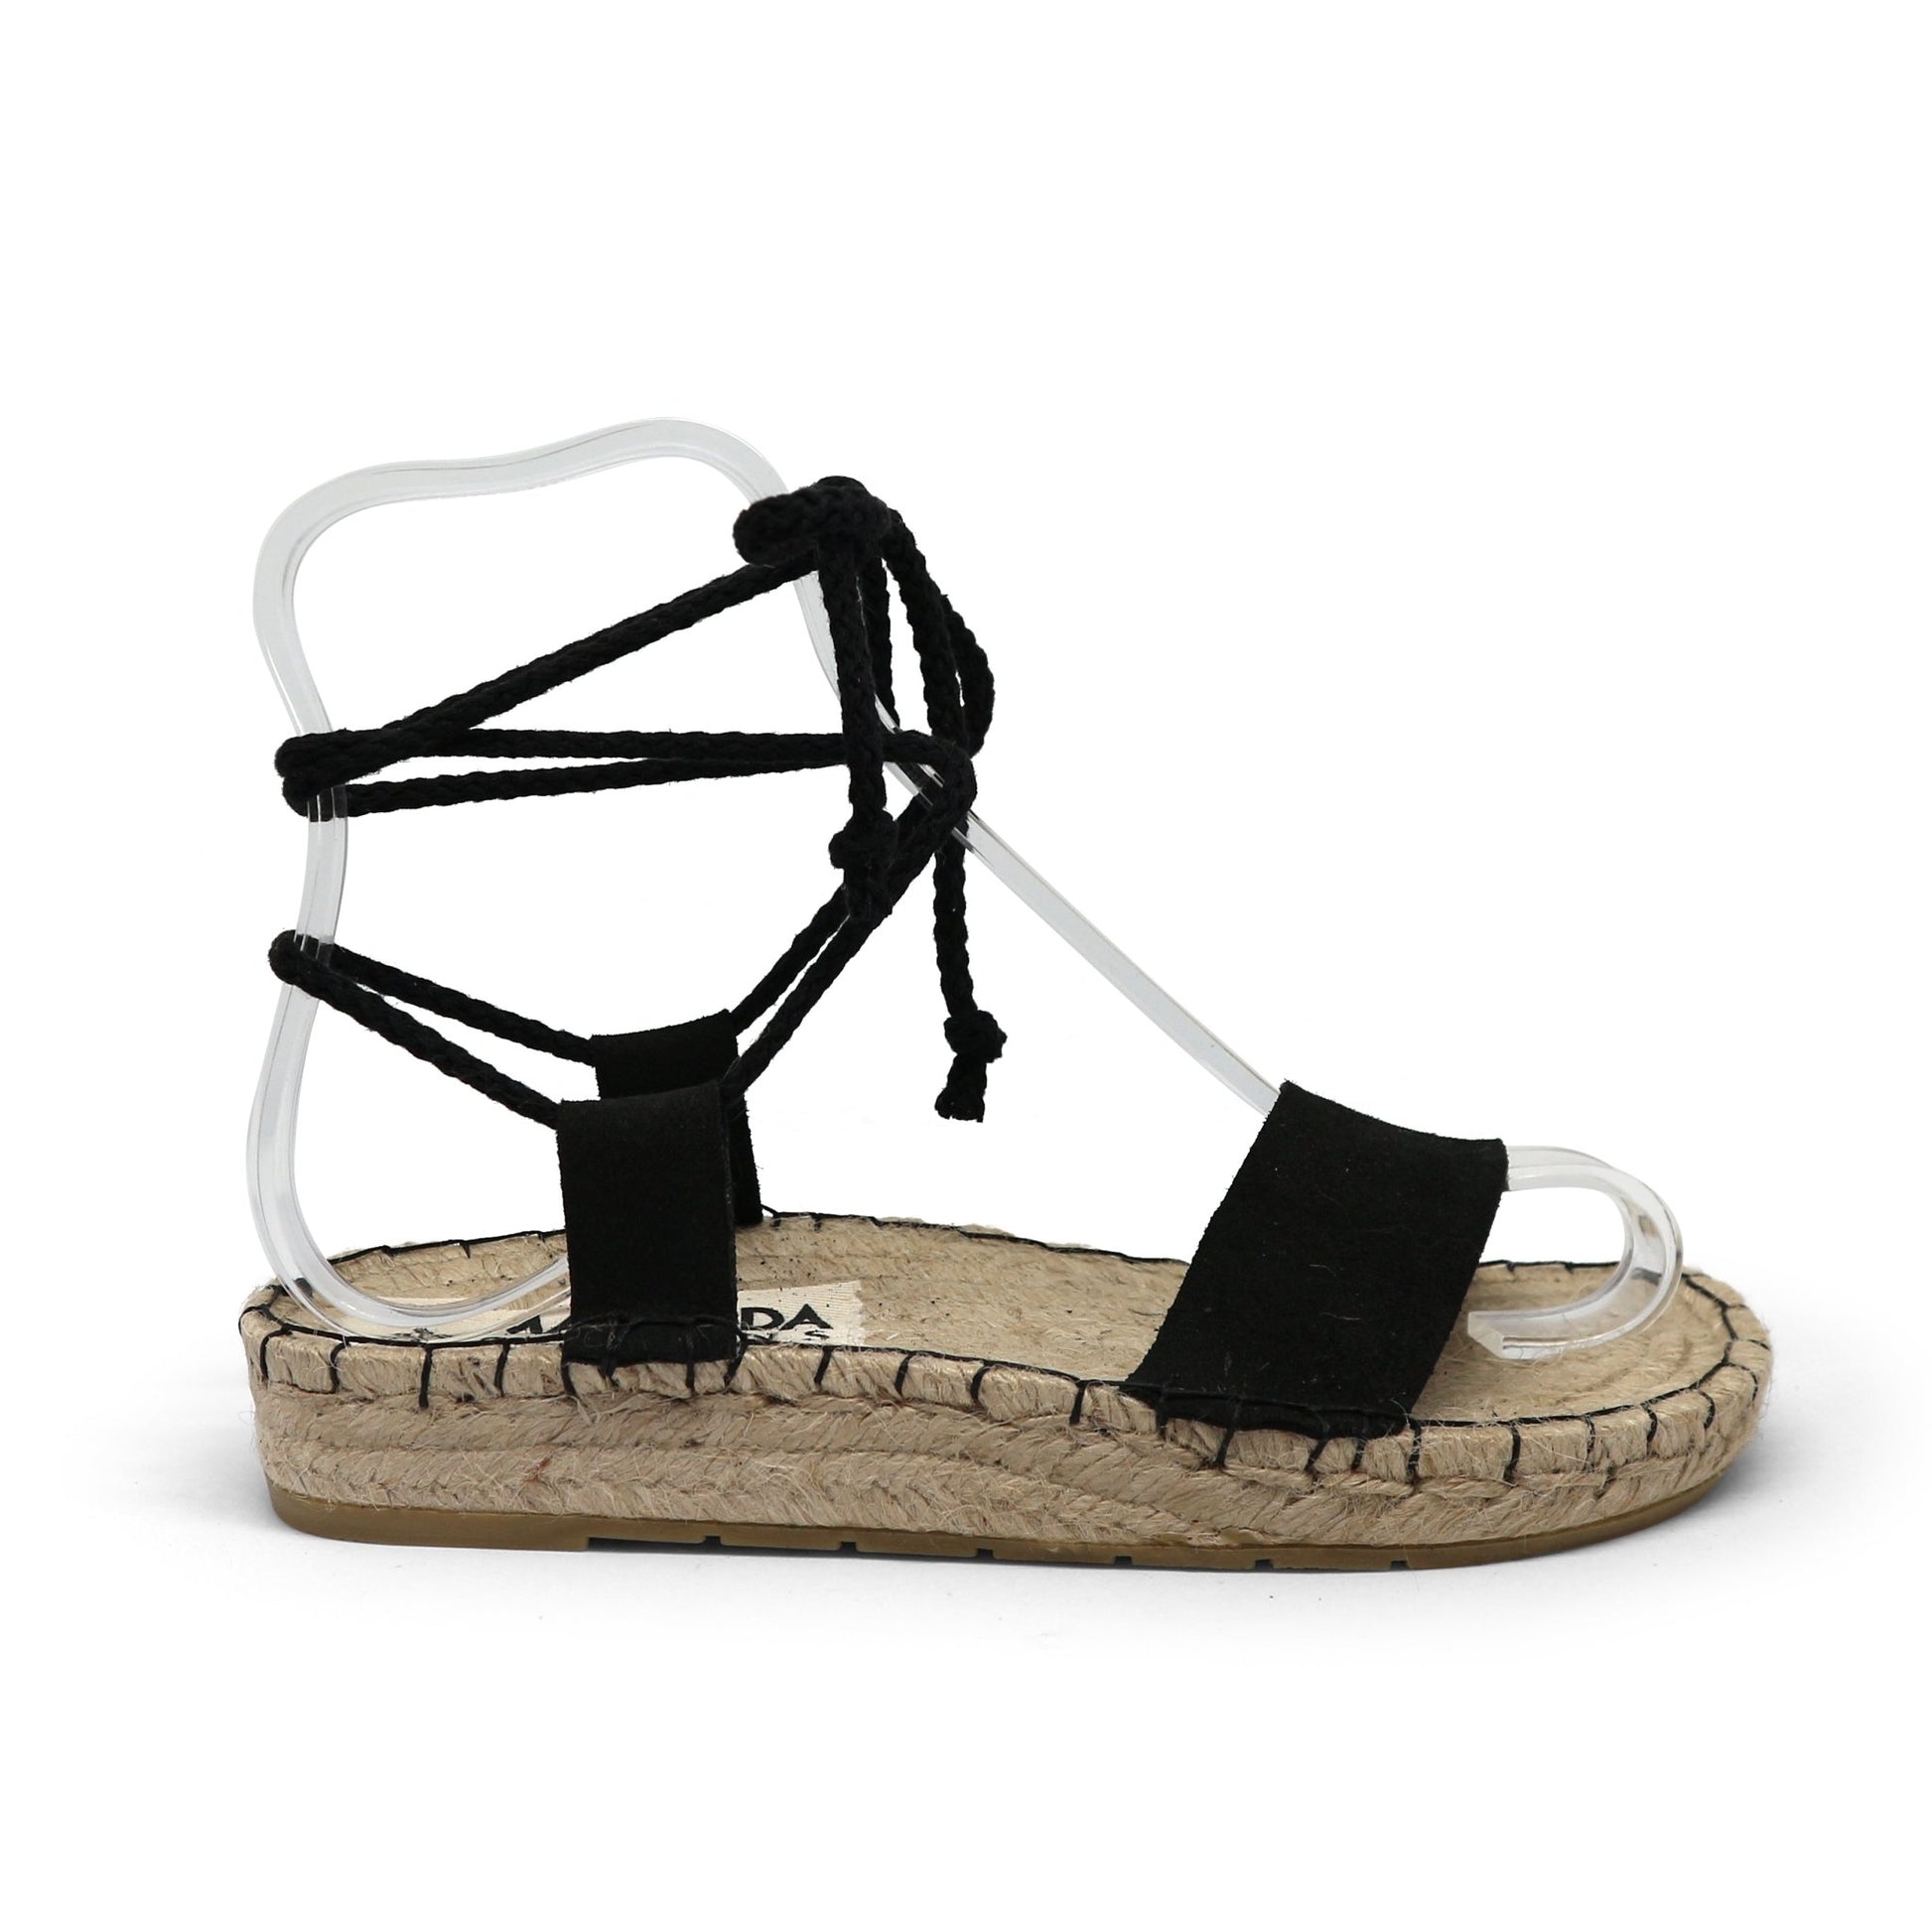 Comfort Lace Up Espadrilles Sandals - Black - Maslinda Designs